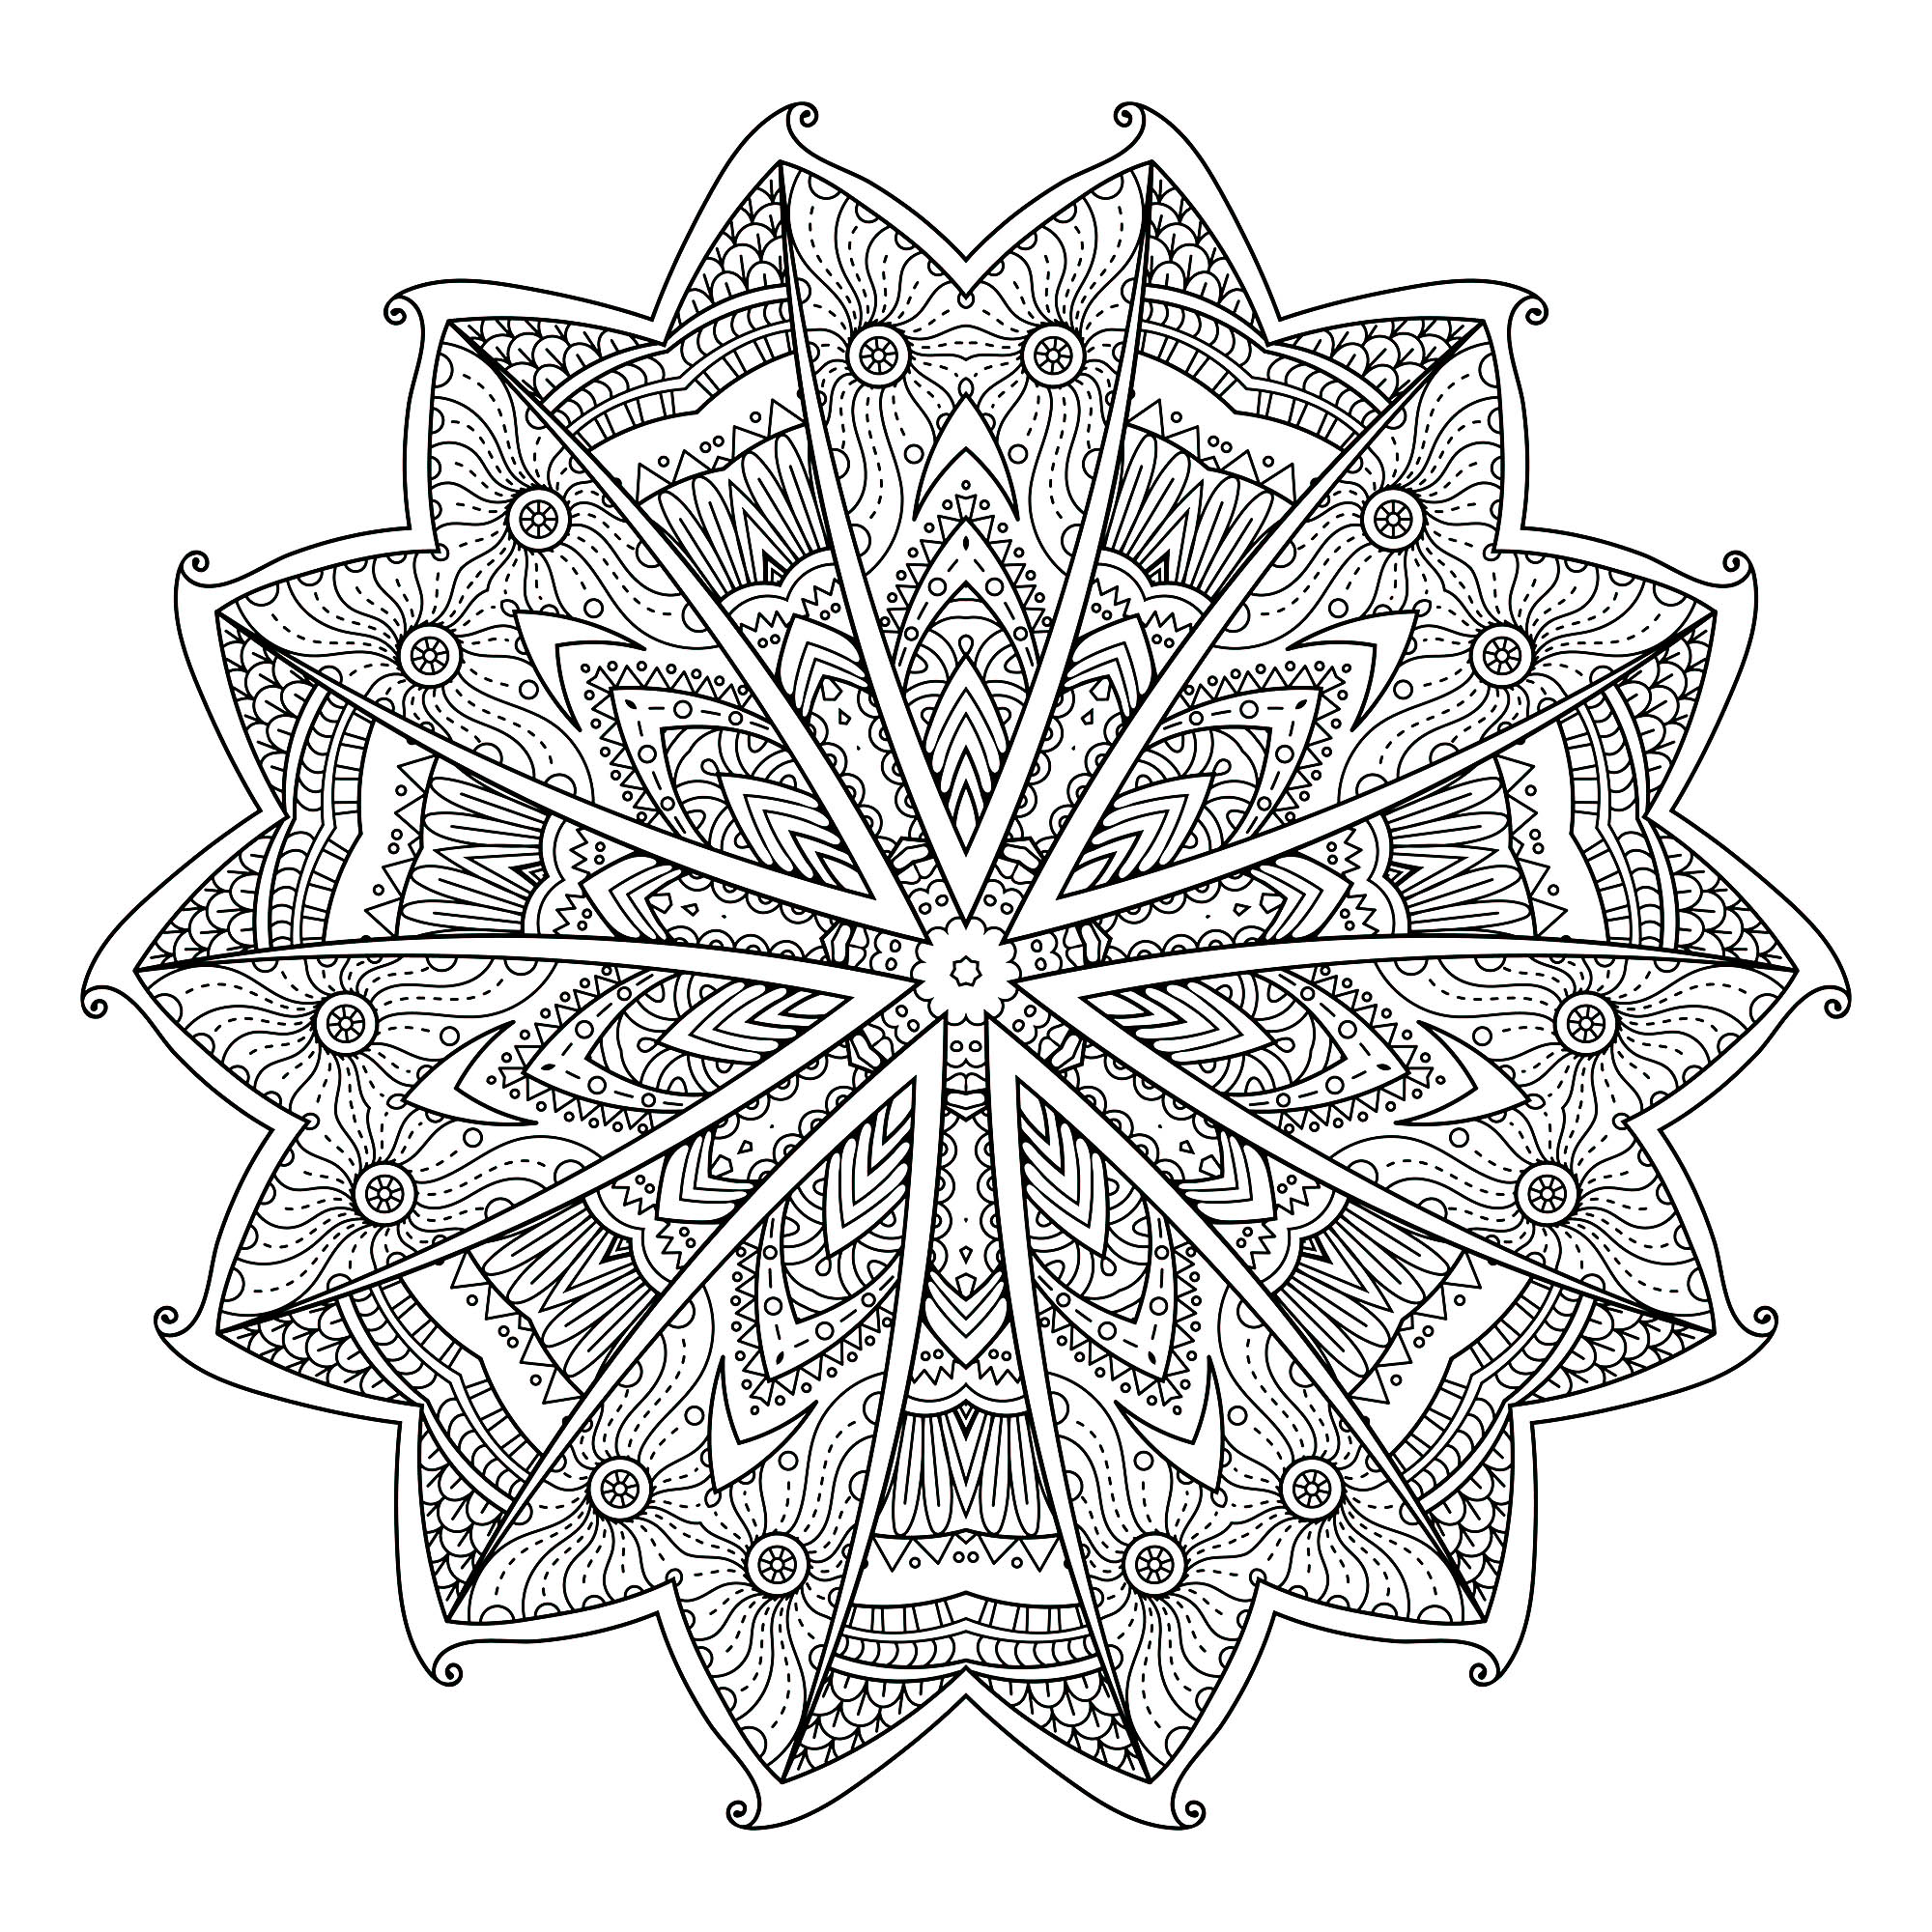 Si vous êtes prêt à passer de longues minutes de relaxation, préparez vous à colorier ce Mandala floral assez complexes ... Vous pourrez utiliser de nombreuses couleurs si vous le souhaitez.